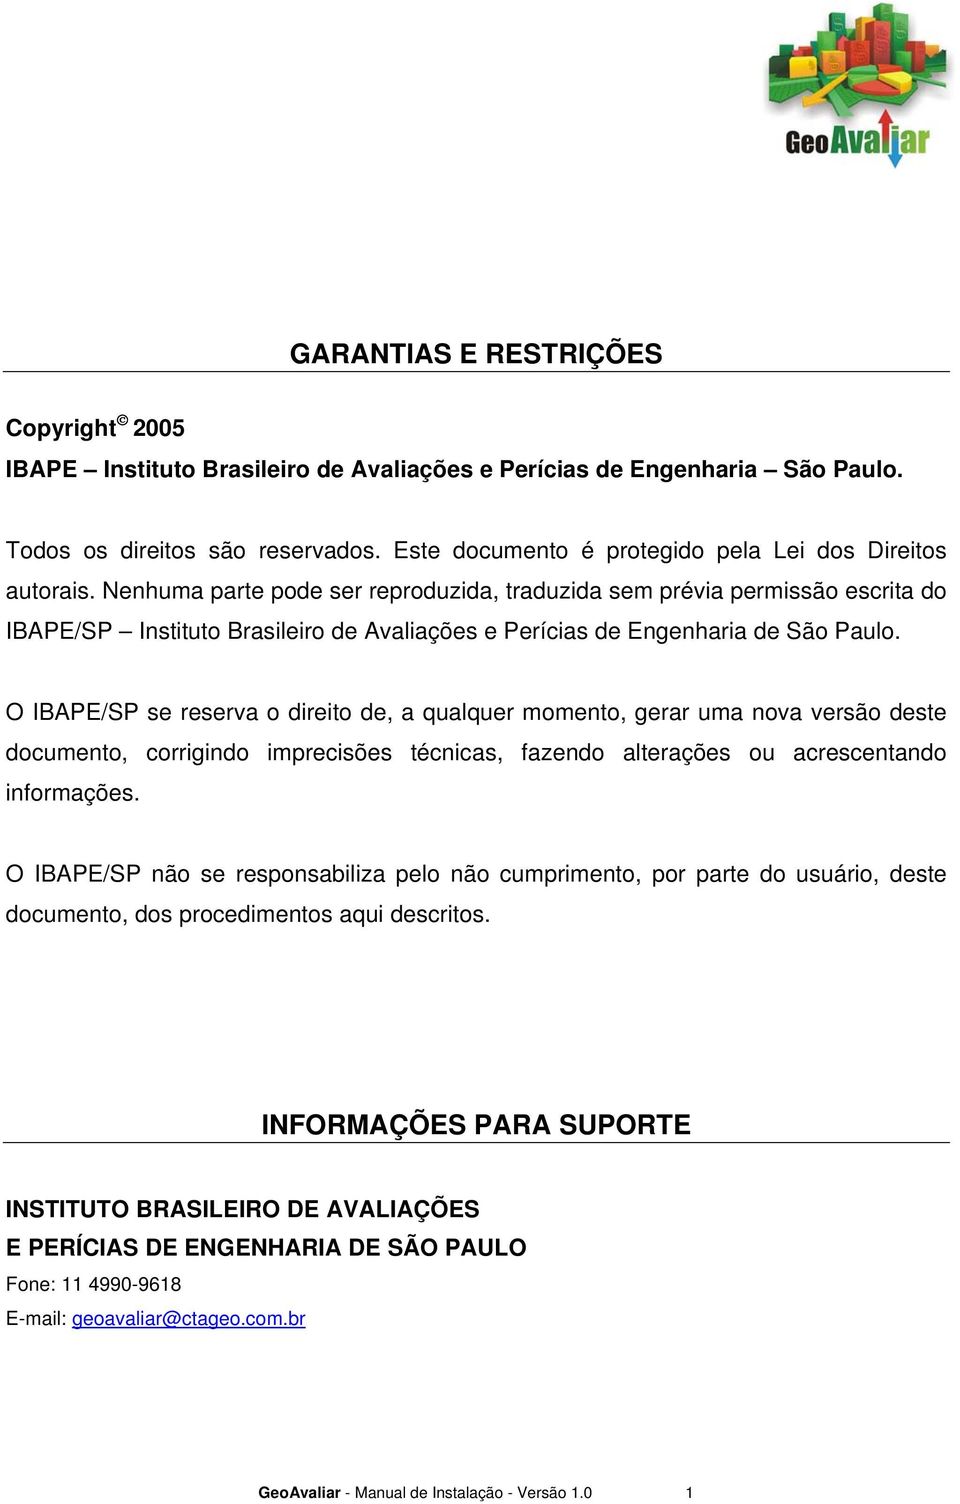 Nenhuma parte pode ser reproduzida, traduzida sem prévia permissão escrita do IBAPE/SP Instituto Brasileiro de Avaliações e Perícias de Engenharia de São Paulo.